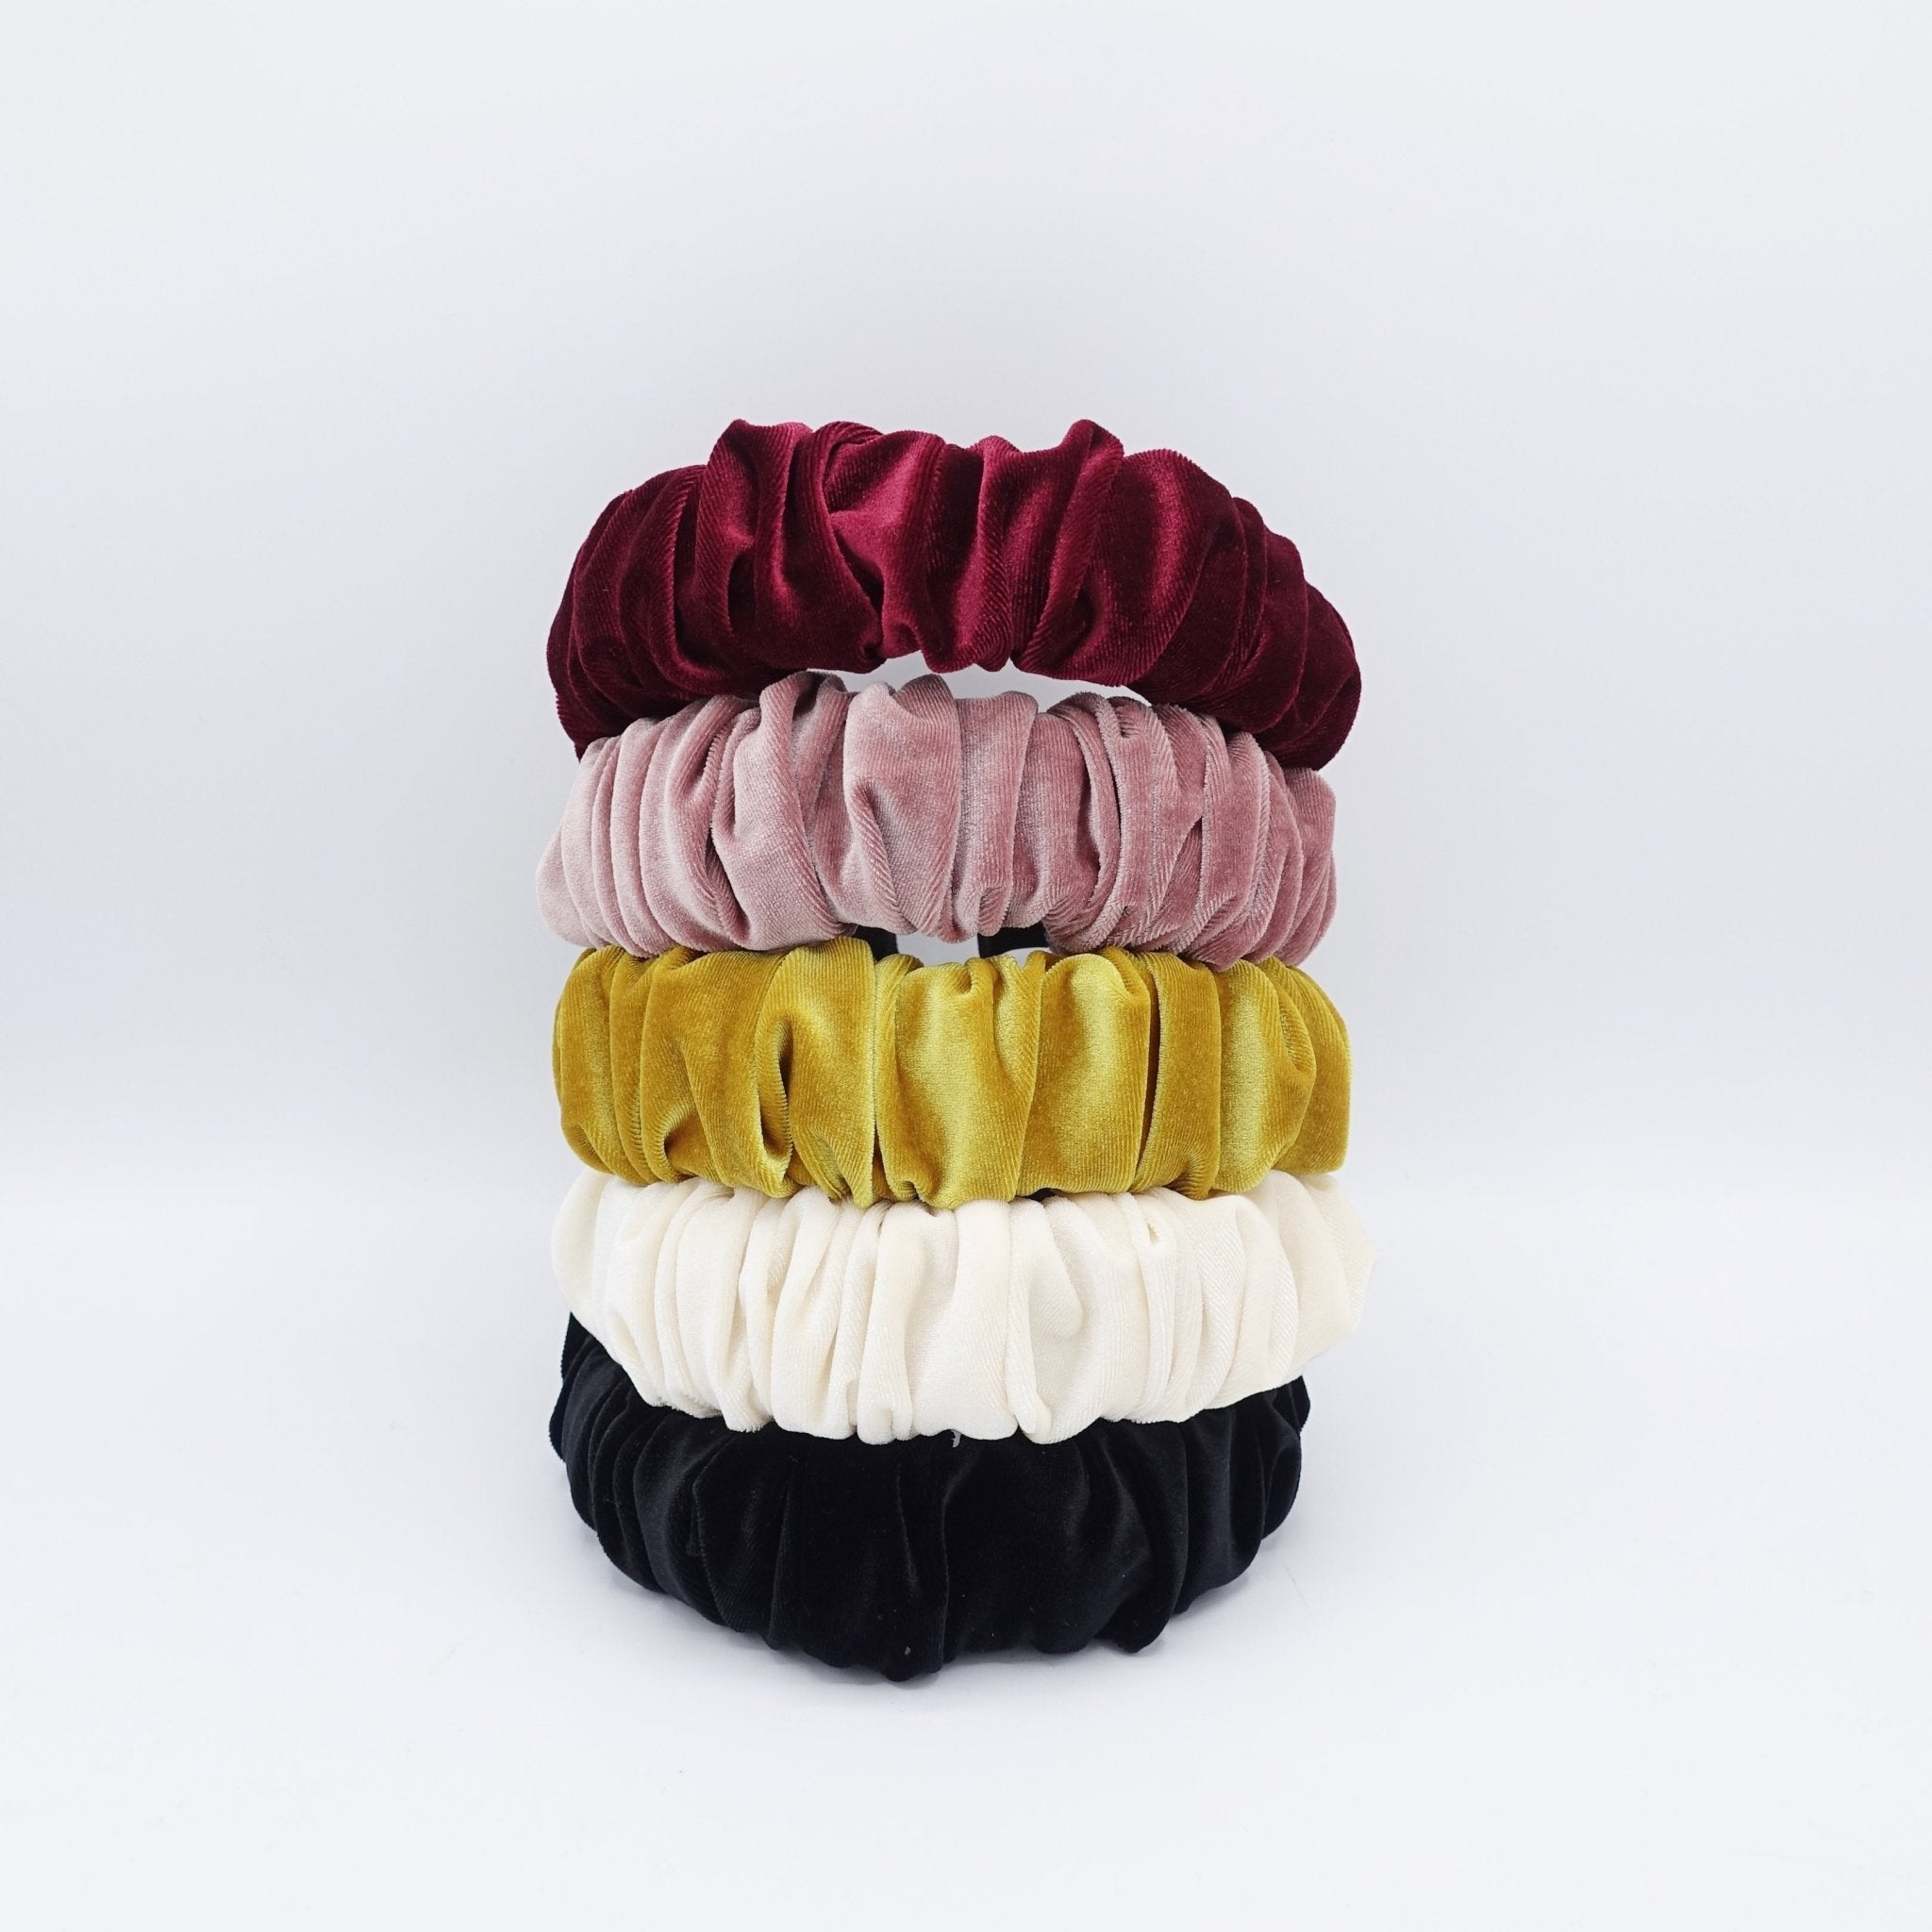 veryshine.com hairband/headband velvet padded and pleated headband stylish hairband hair accessory for women